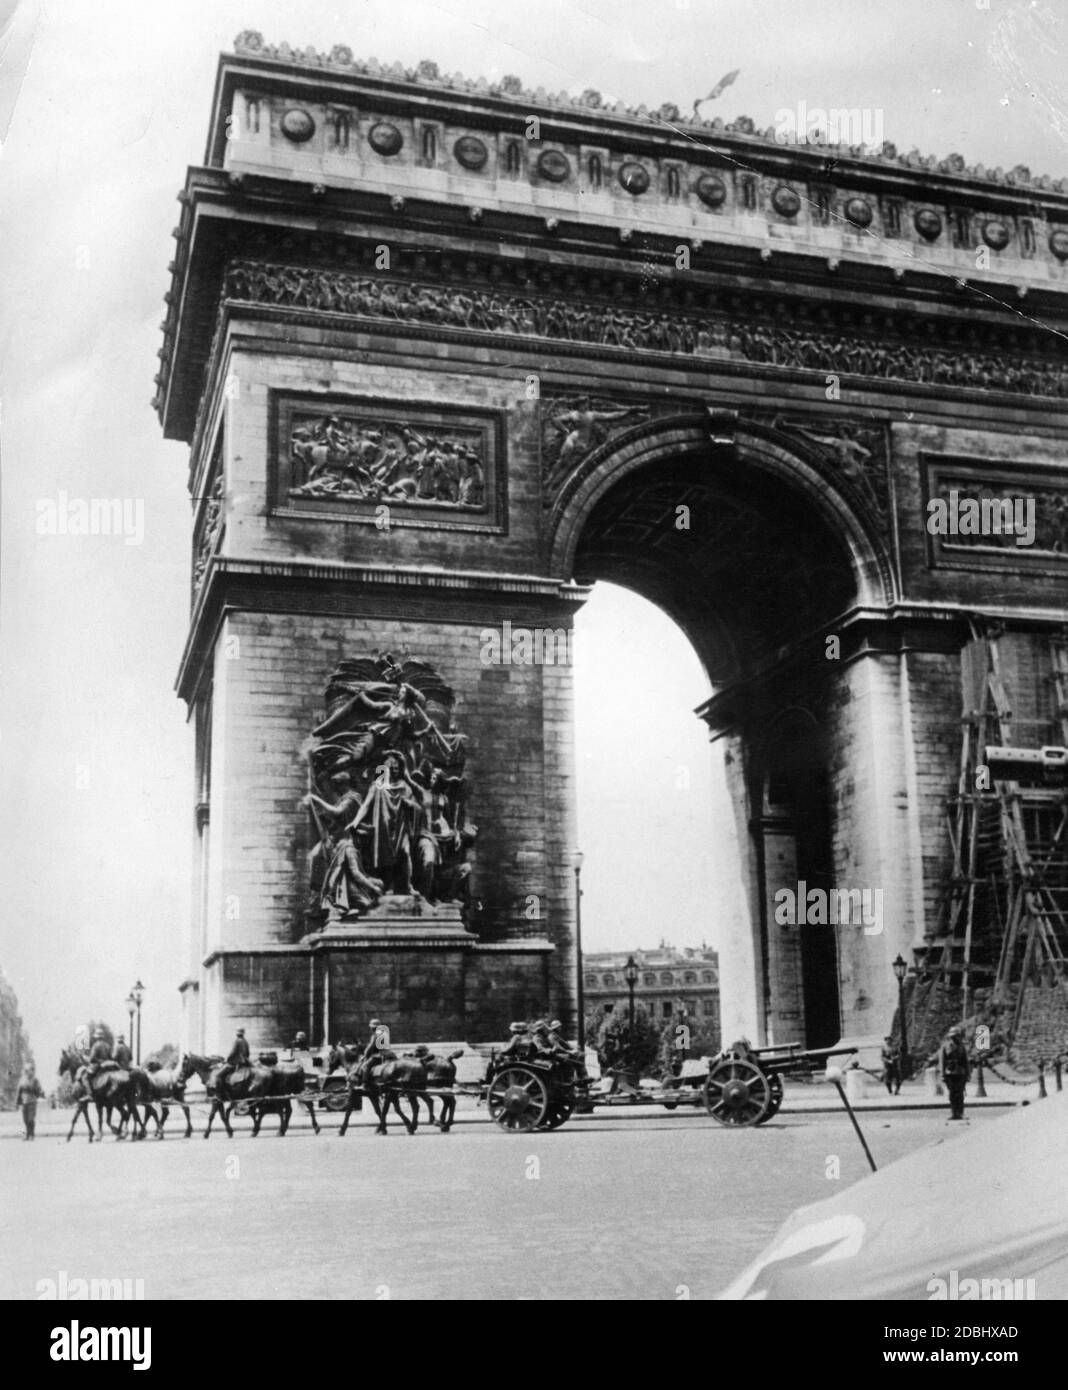 In occasione della capitolazione francese, le truppe tedesche marciano per Parigi. Qui una marcia passato all'Arco di Trionfo. Foto Stock